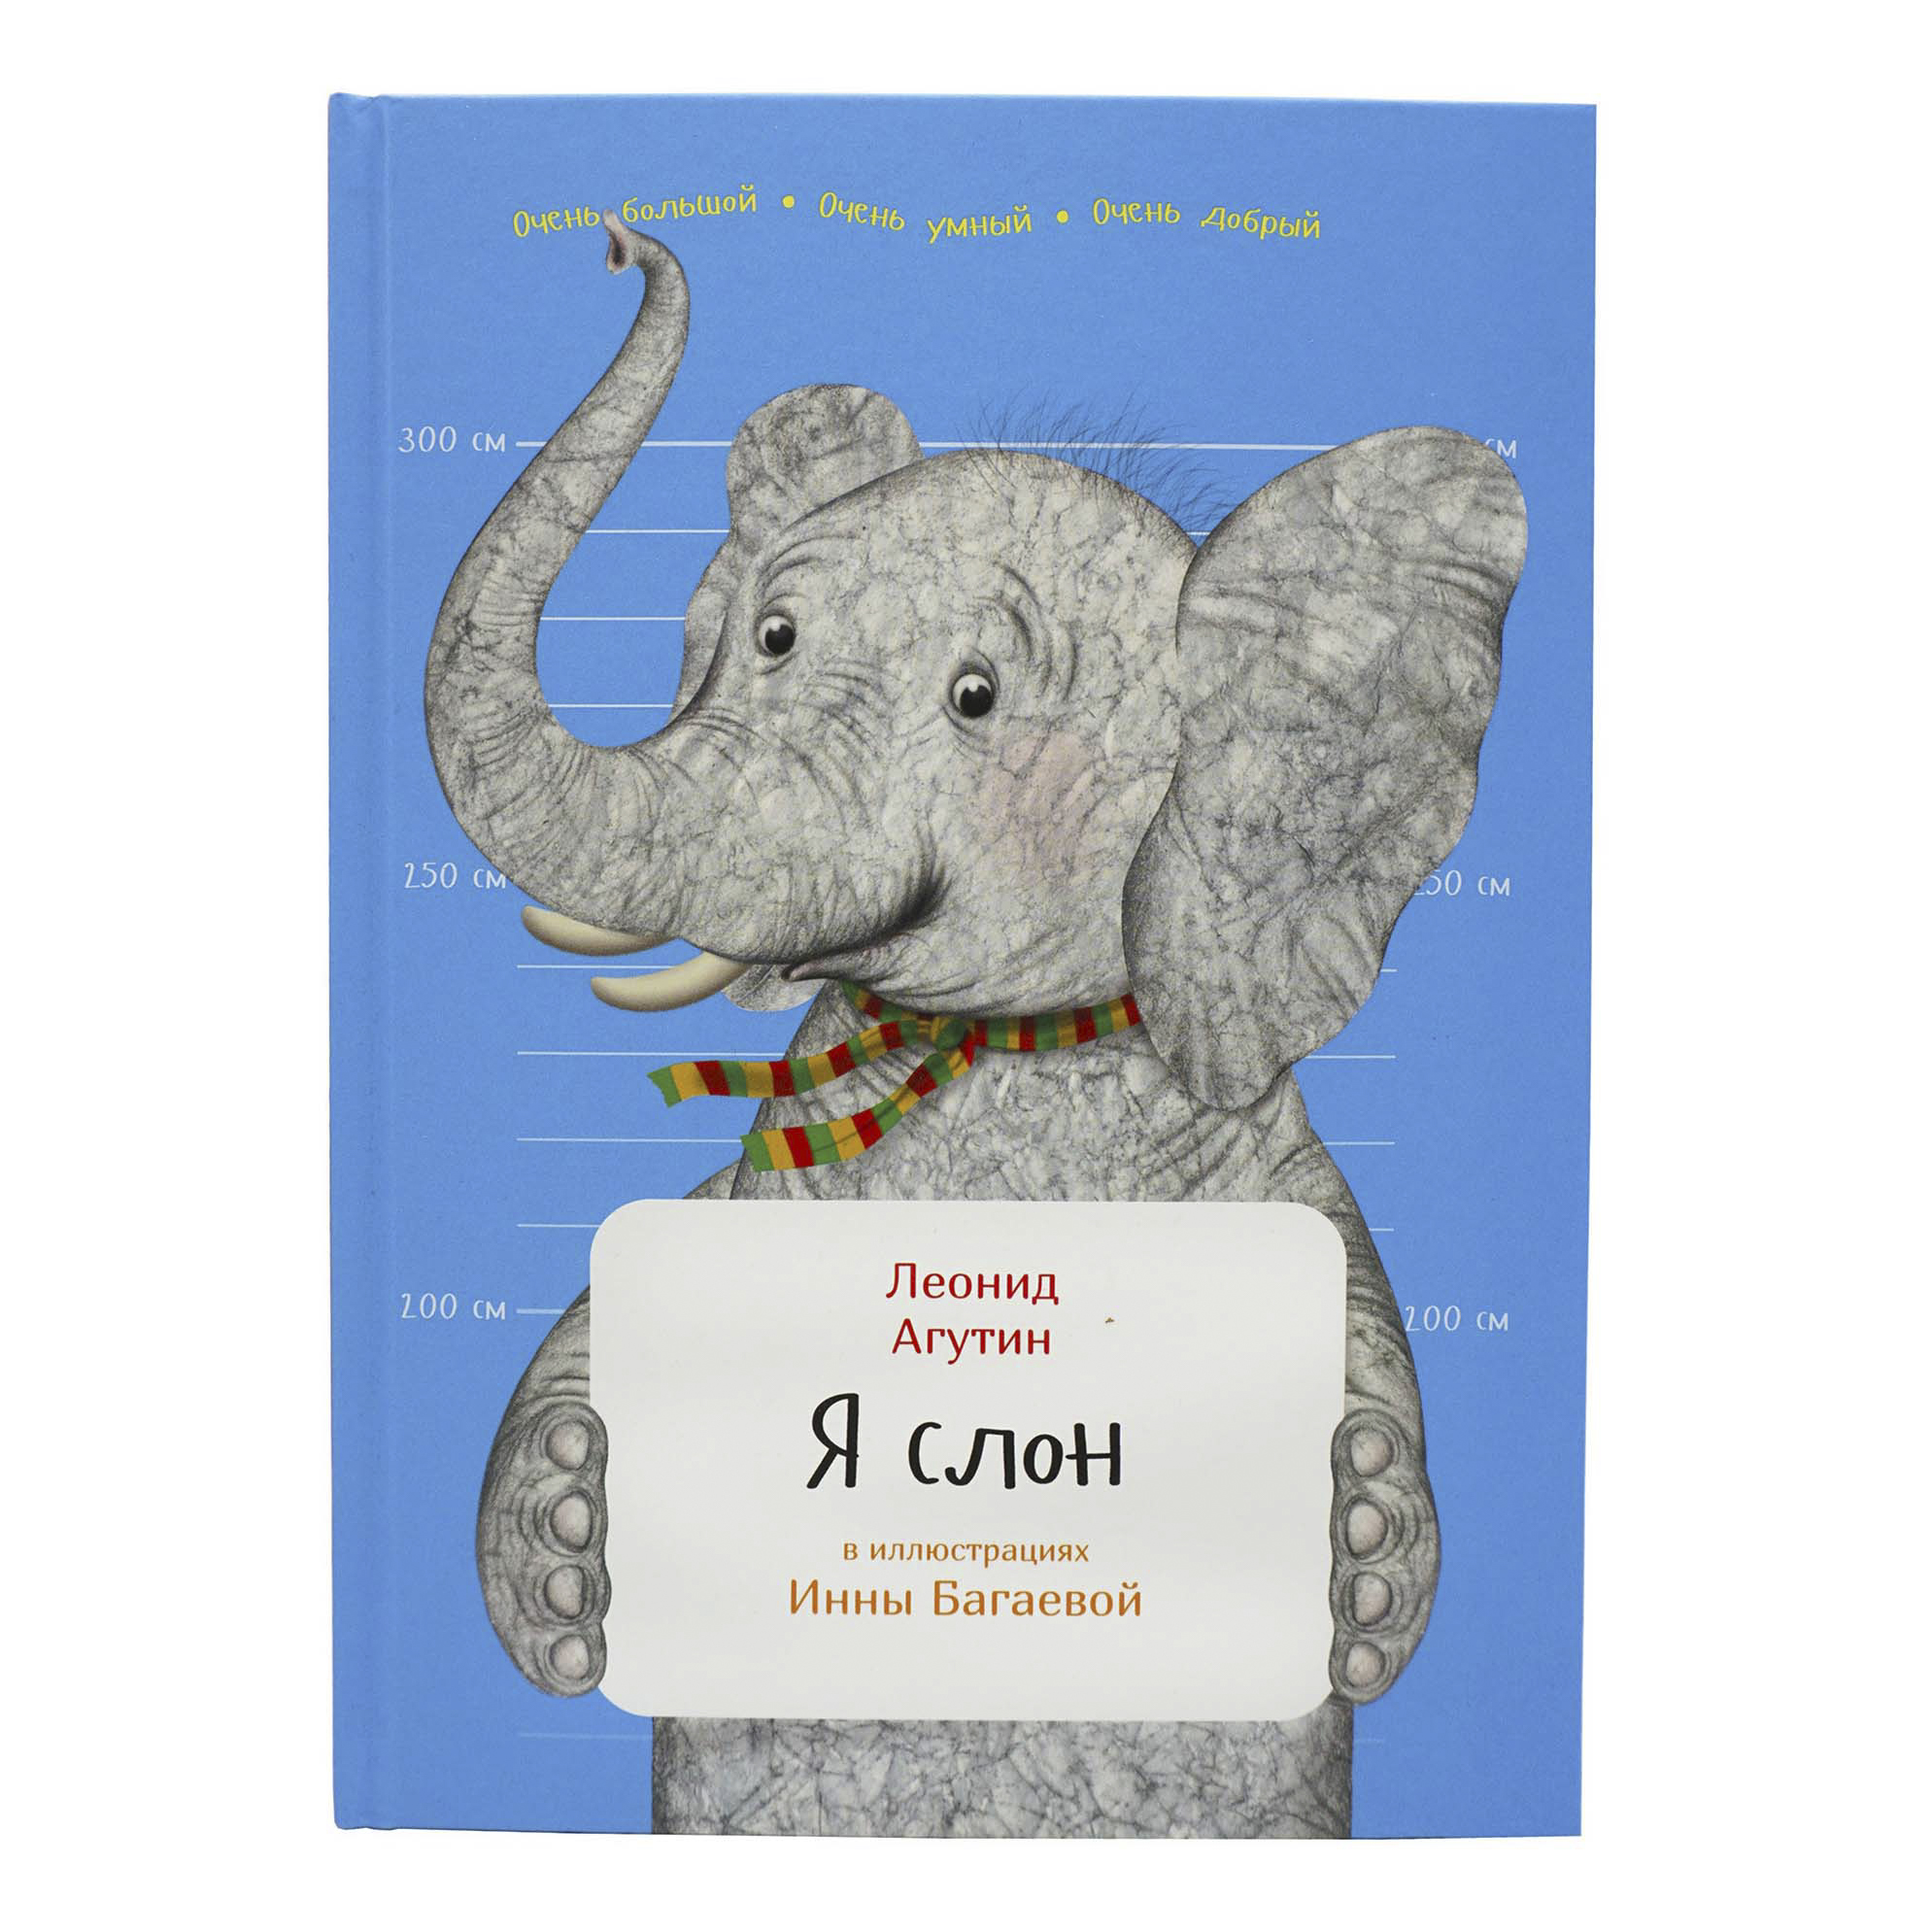 Книга слоновые. Я слон книга. Я слон Агутин. Слон с книгой.